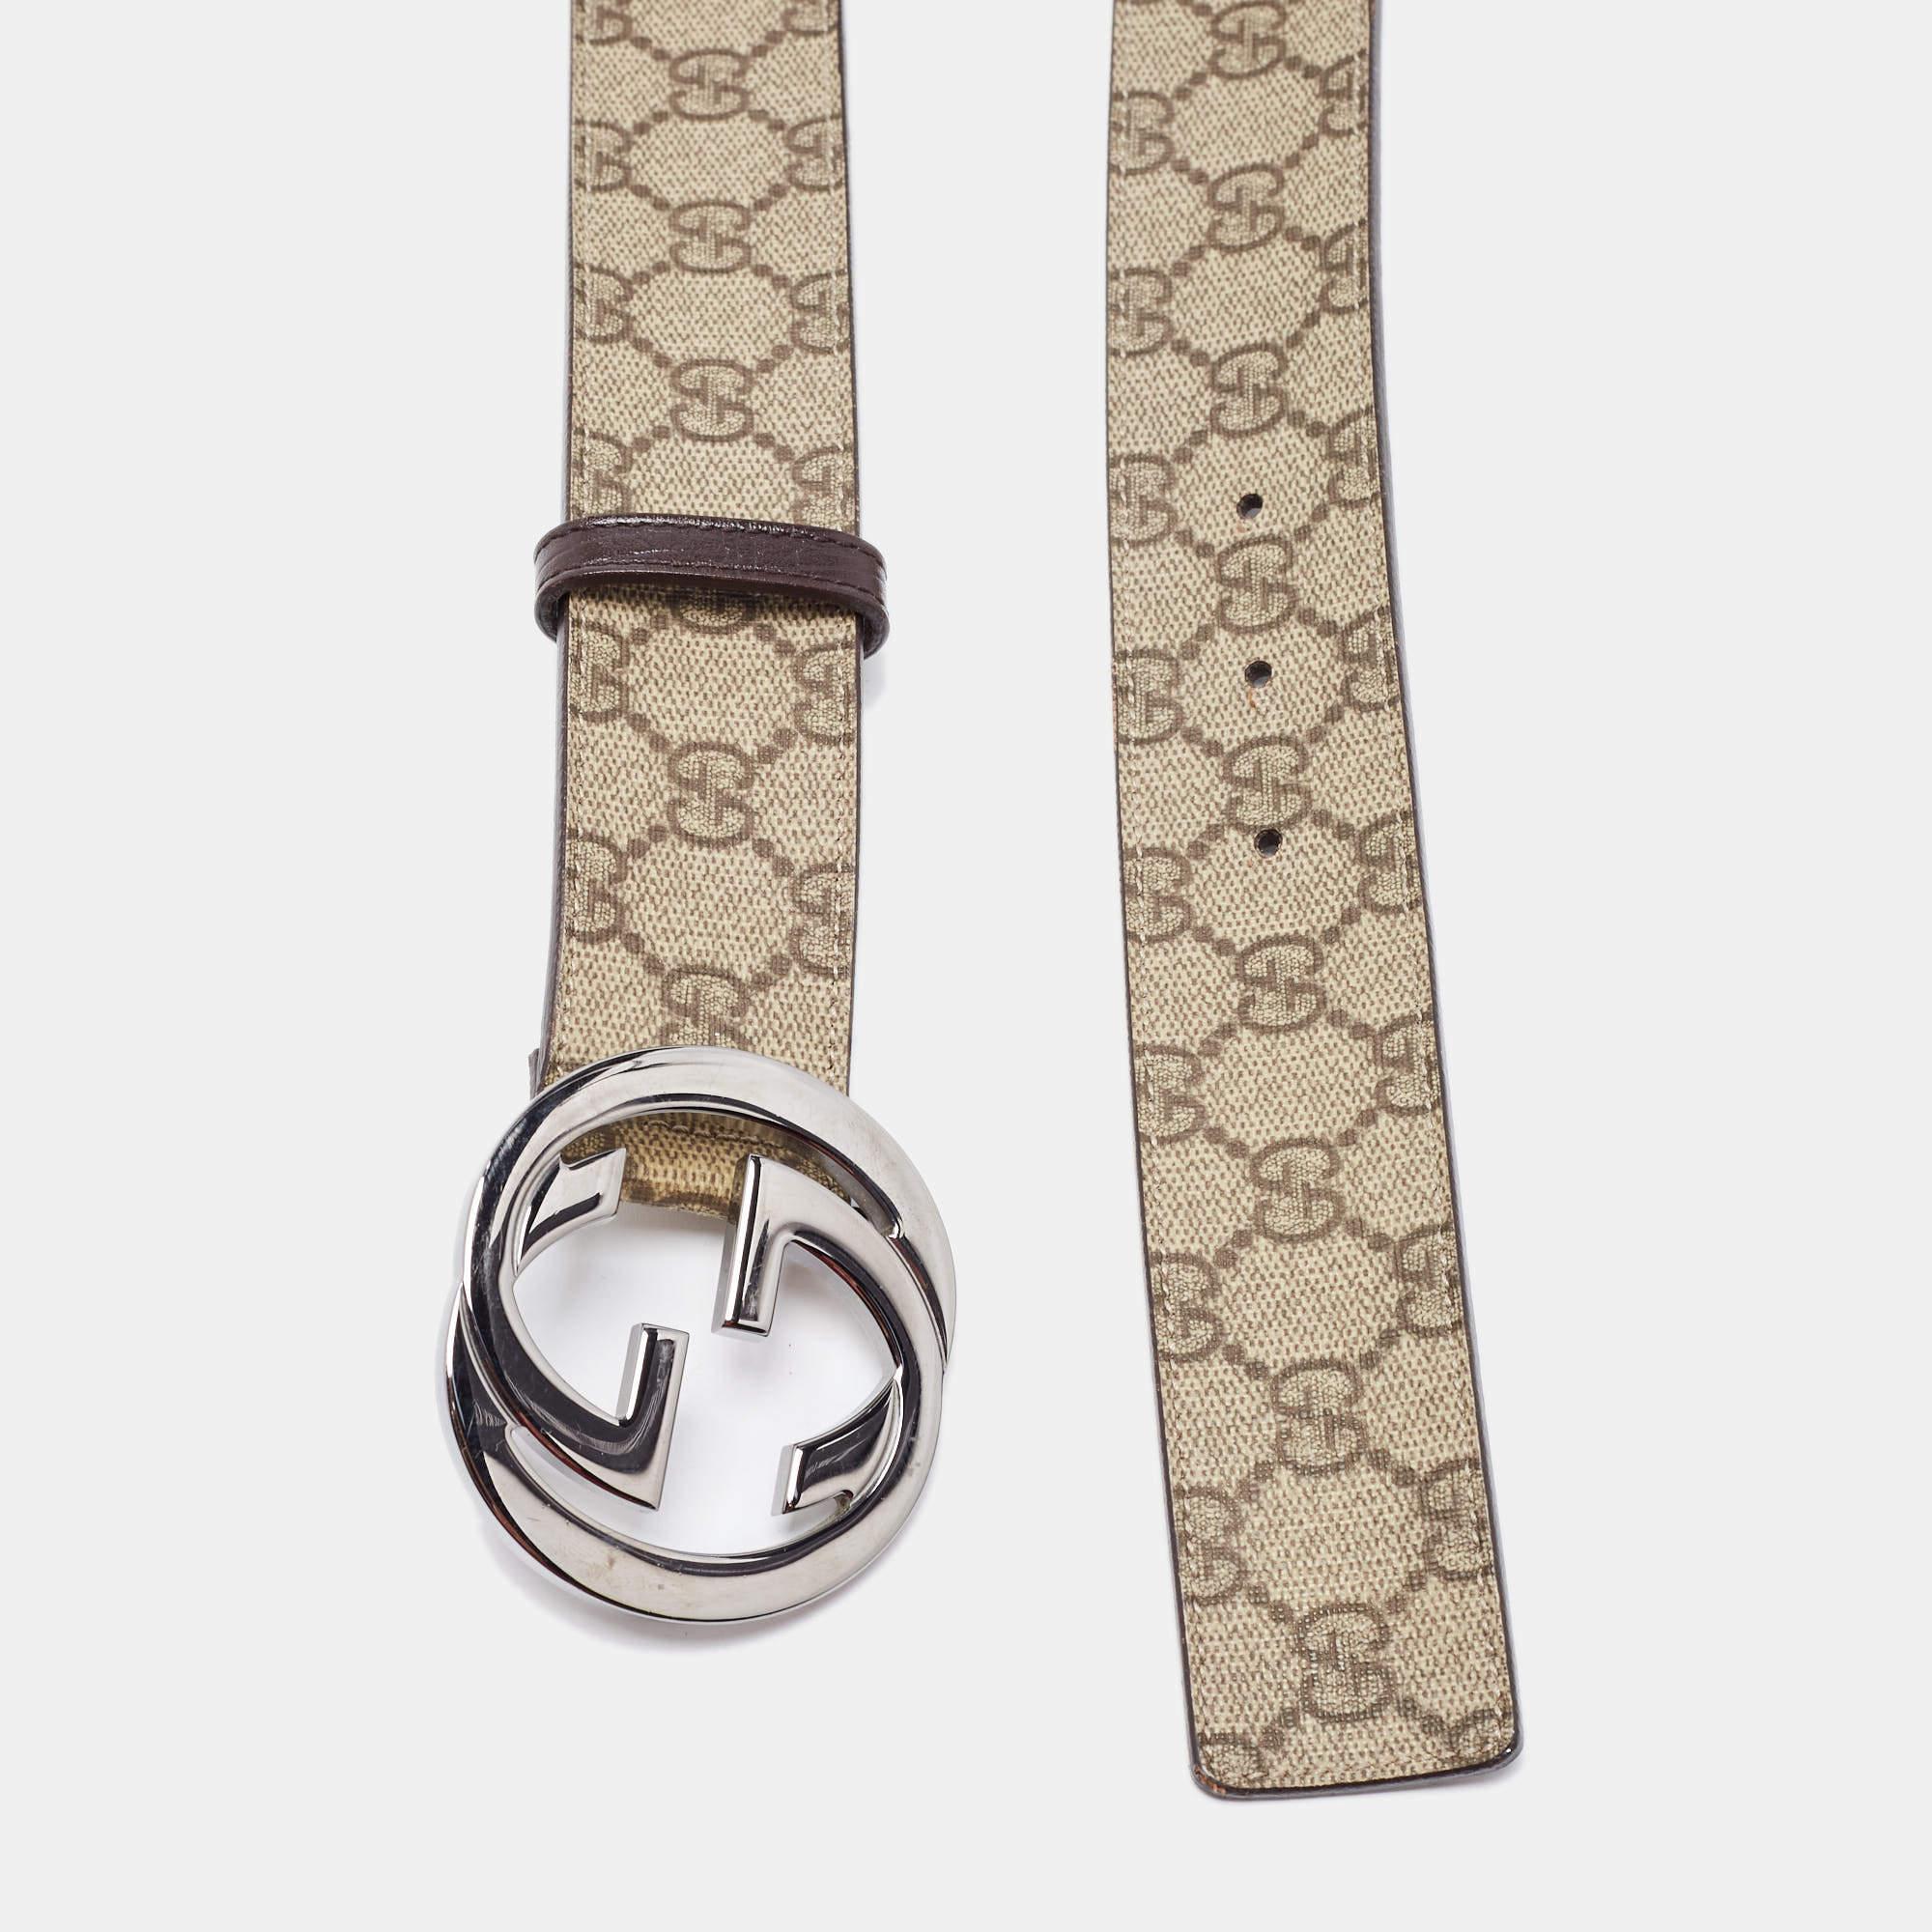 Nous vous présentons une ceinture Gucci qui a été conçue pour être durable et pour s'adapter à tous vos looks raffinés. D'une grande durabilité et d'un grand attrait, cette ceinture est un élément de luxe.

